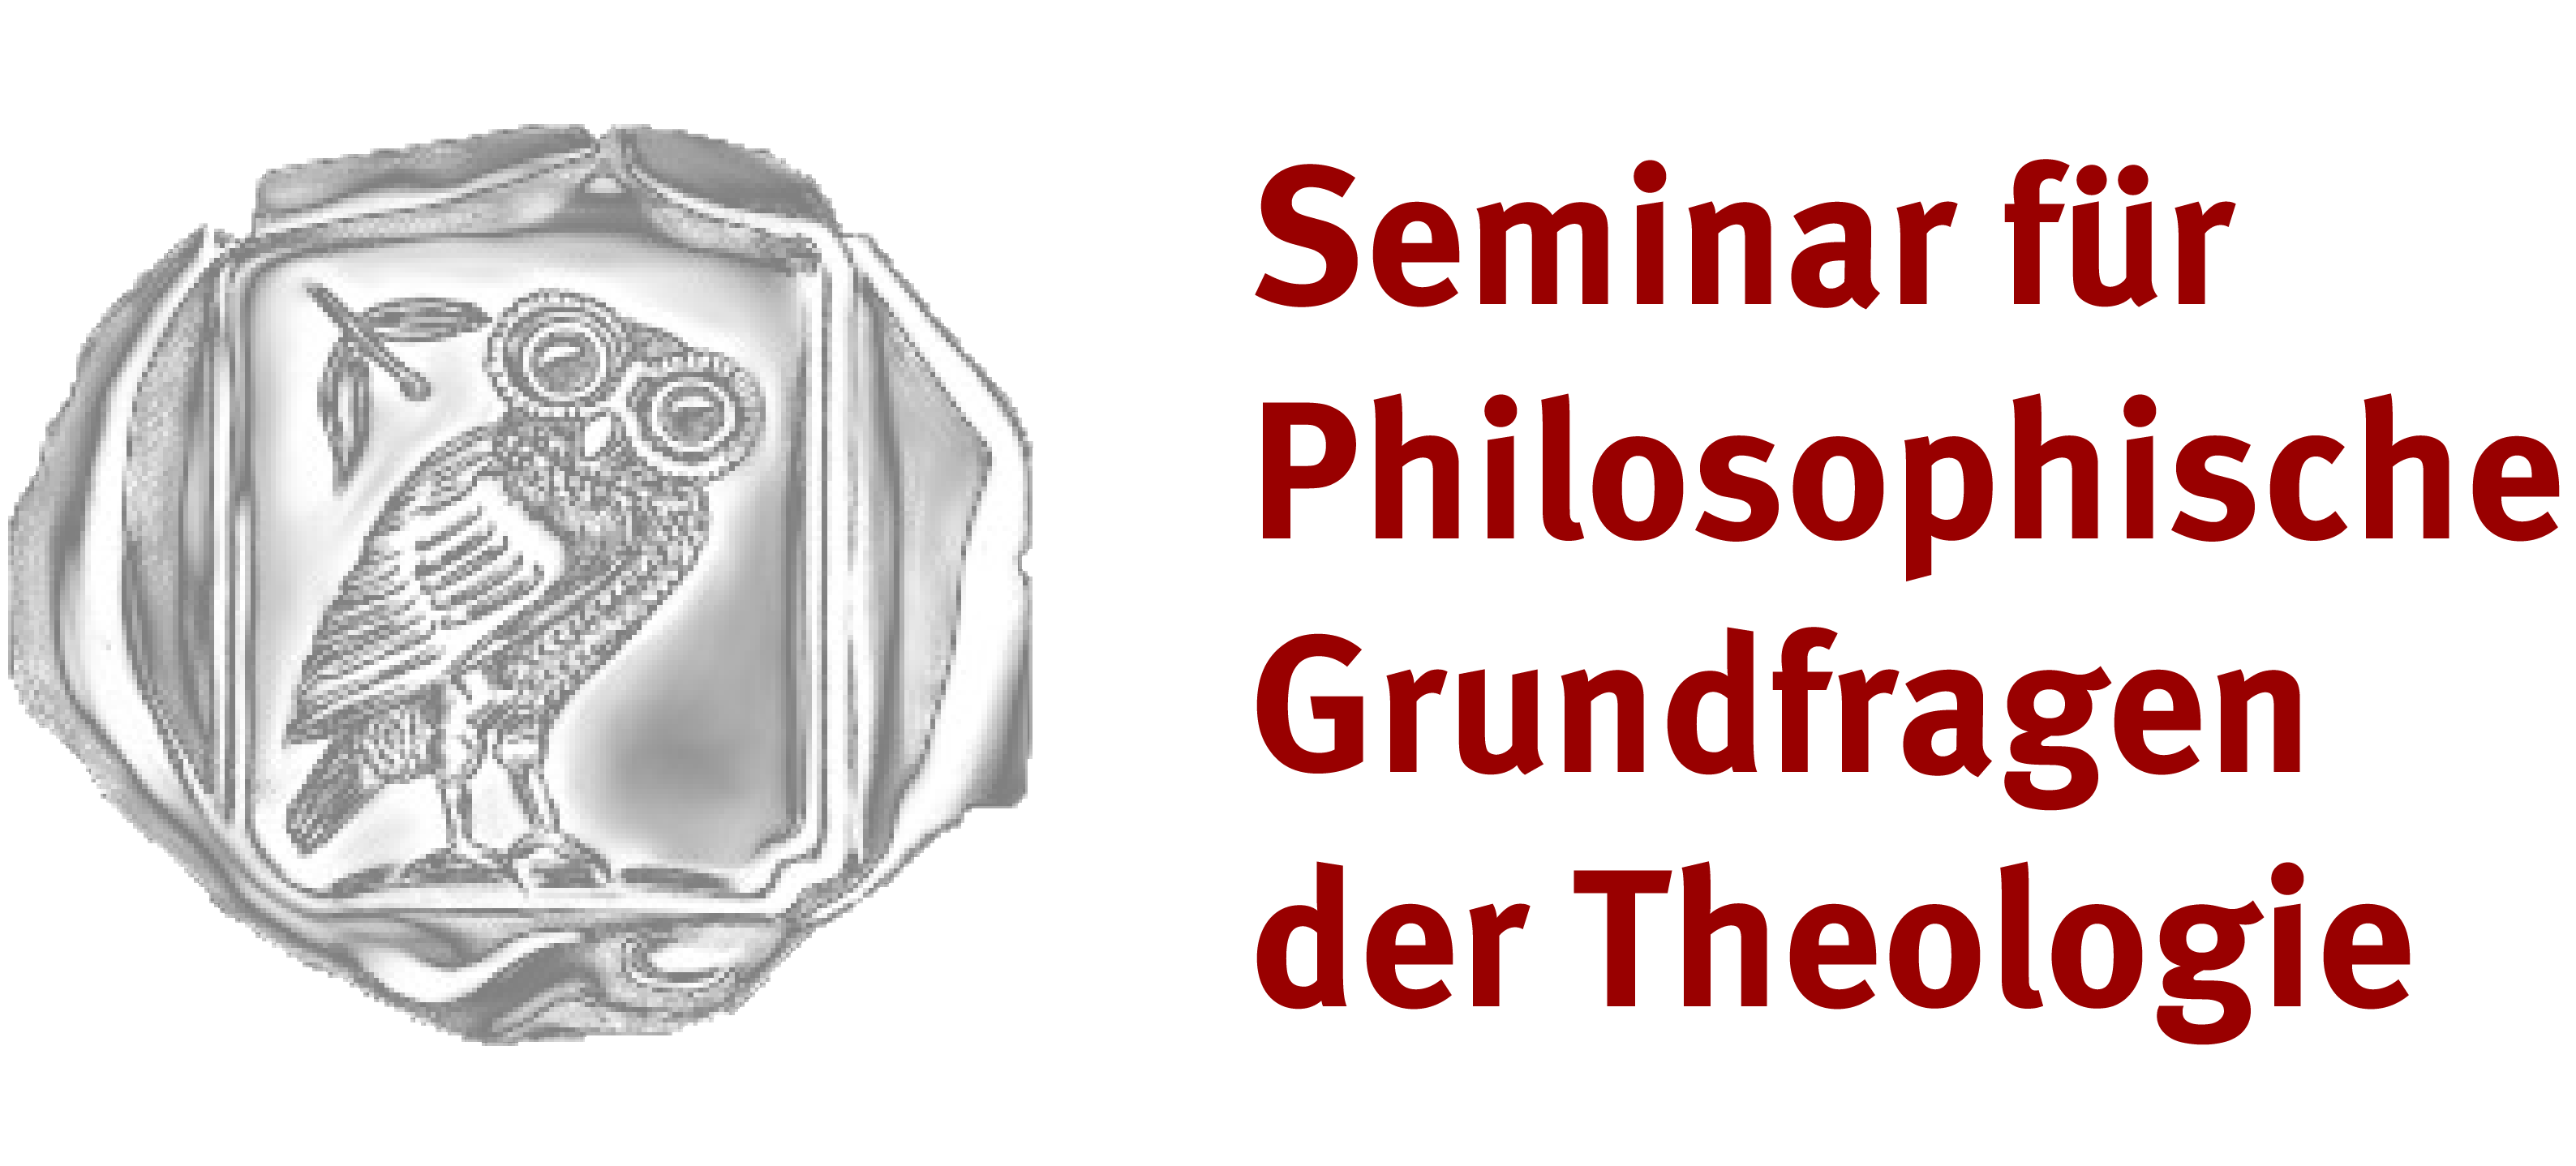 Seminar für Philosophische Grundfragen der Theologie